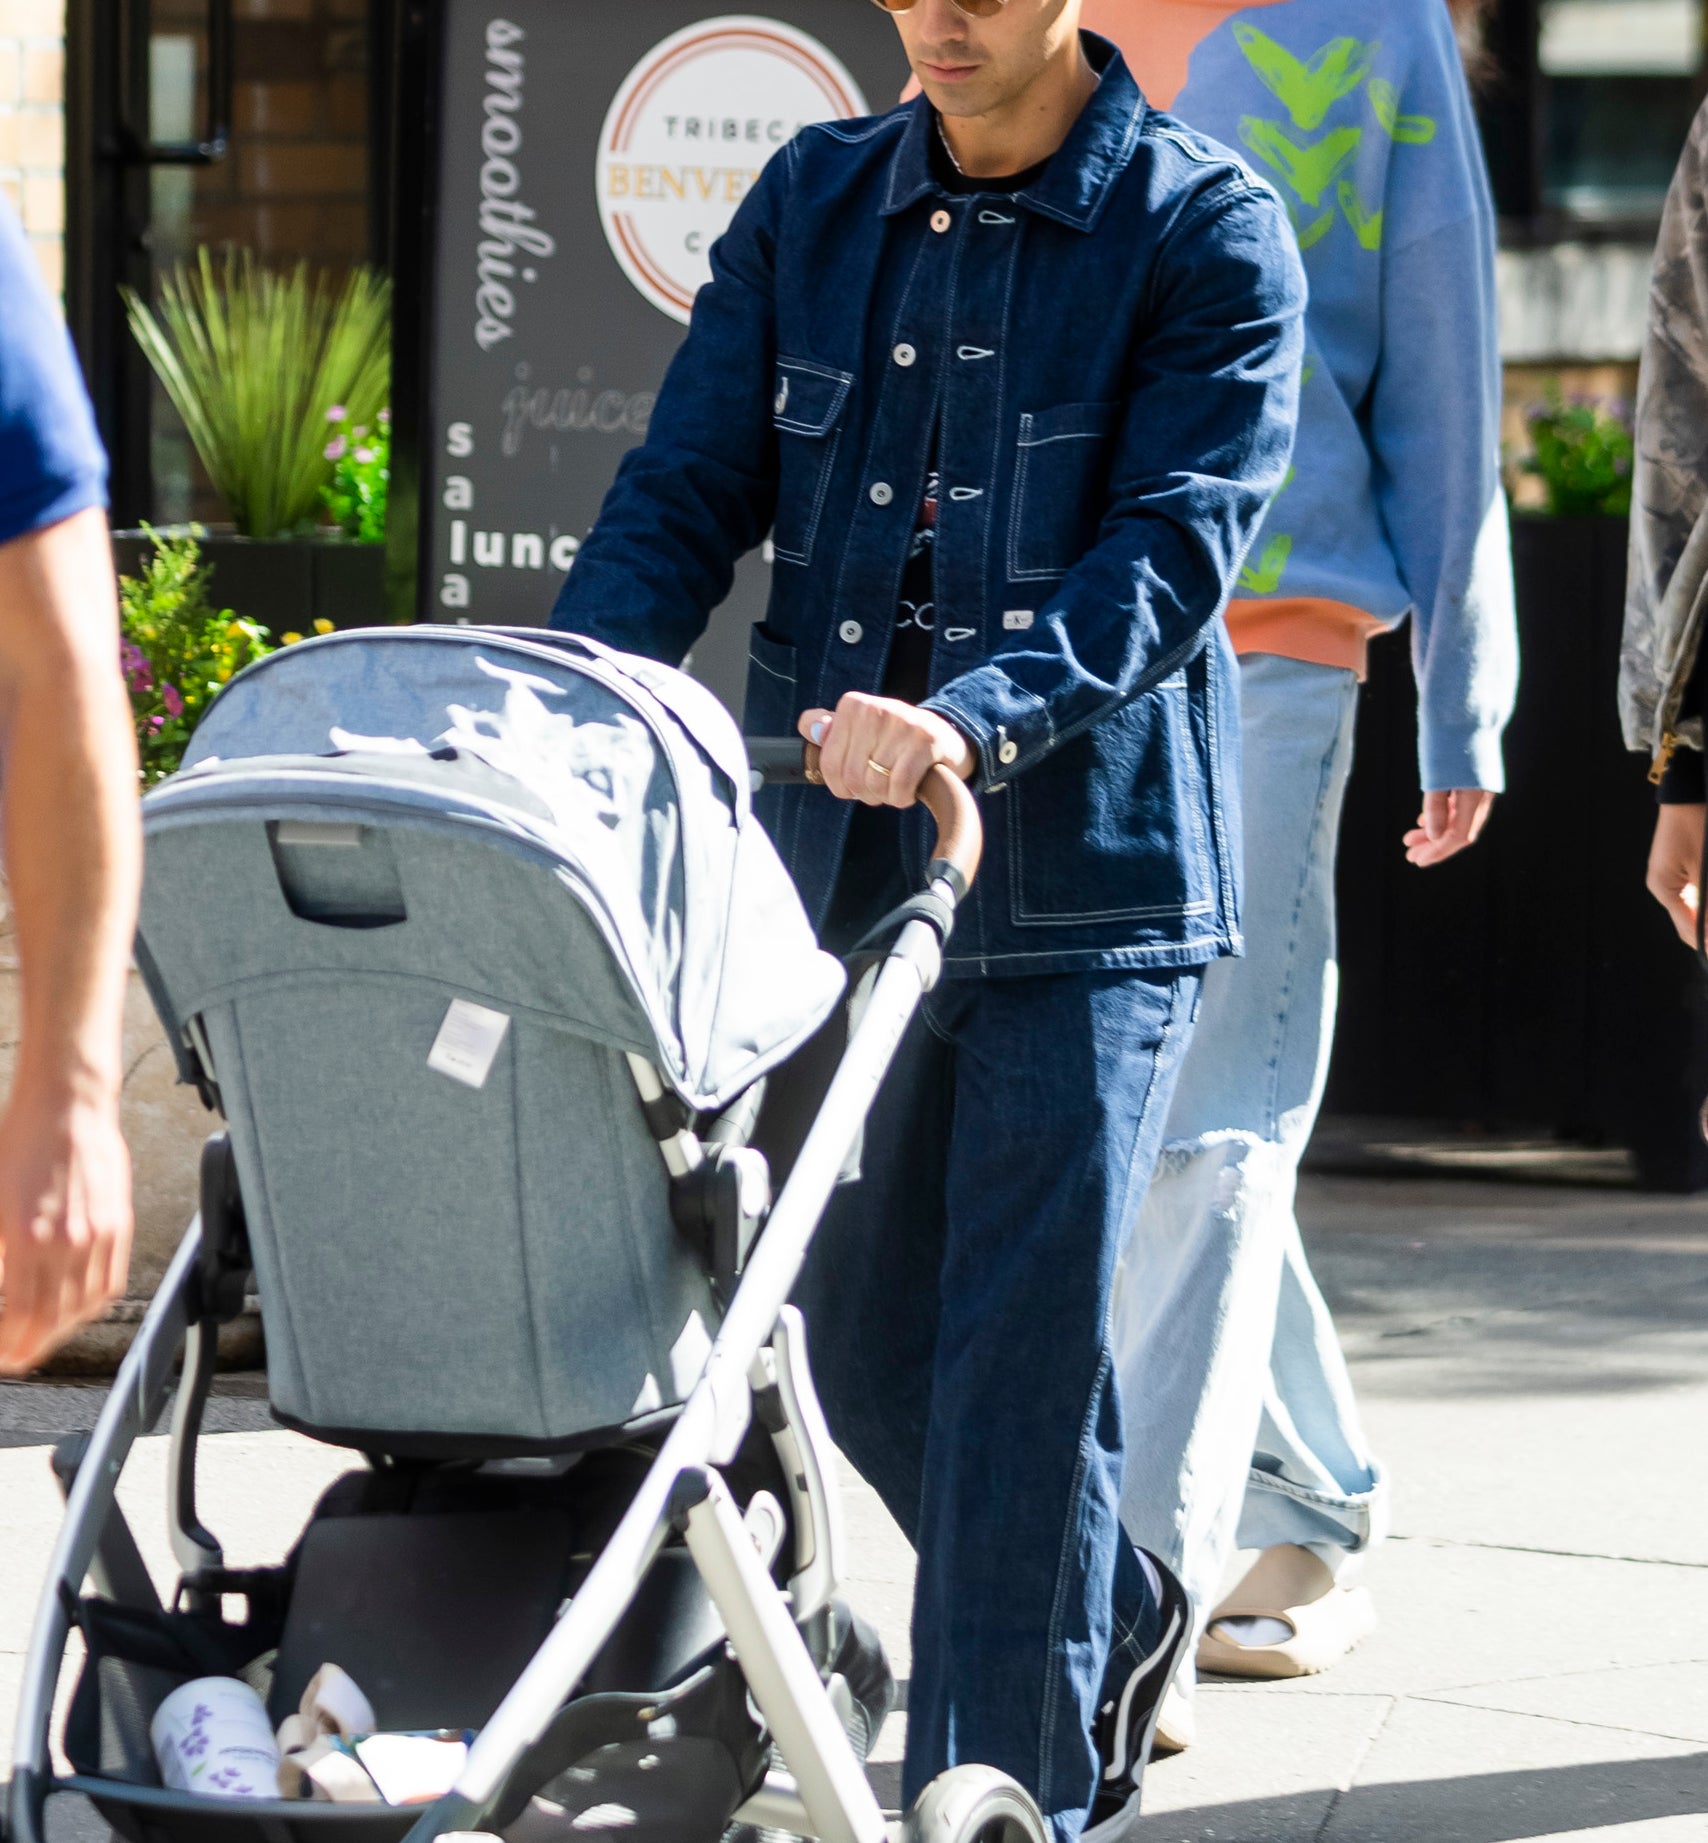 Joe Jonas pushing a baby stroller as Sophie Turner walks behind him